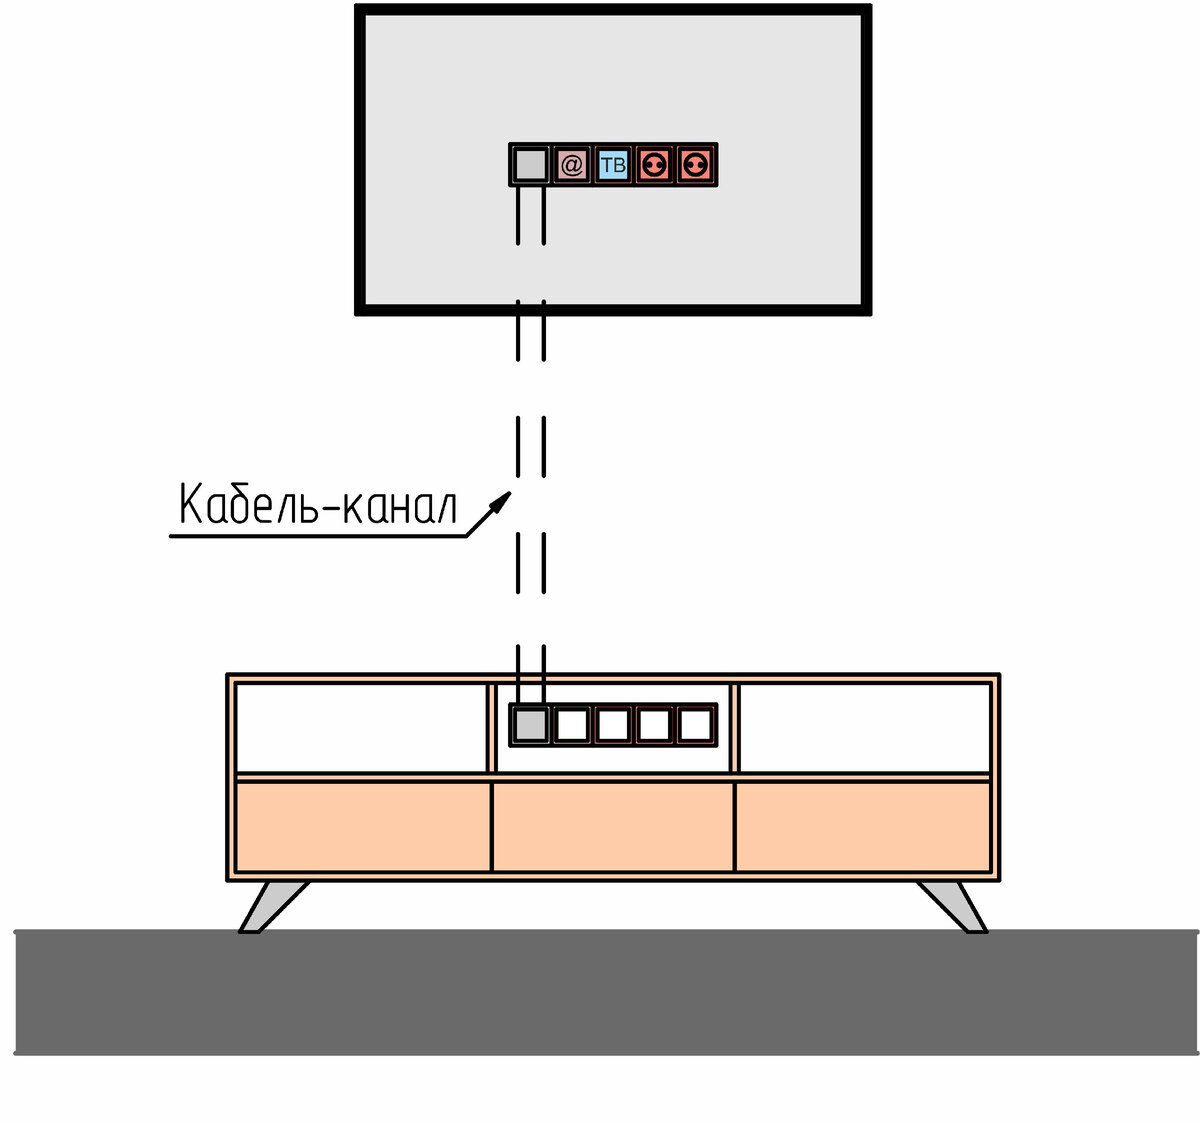 Кабель канал для ТВ проводов на стене схема